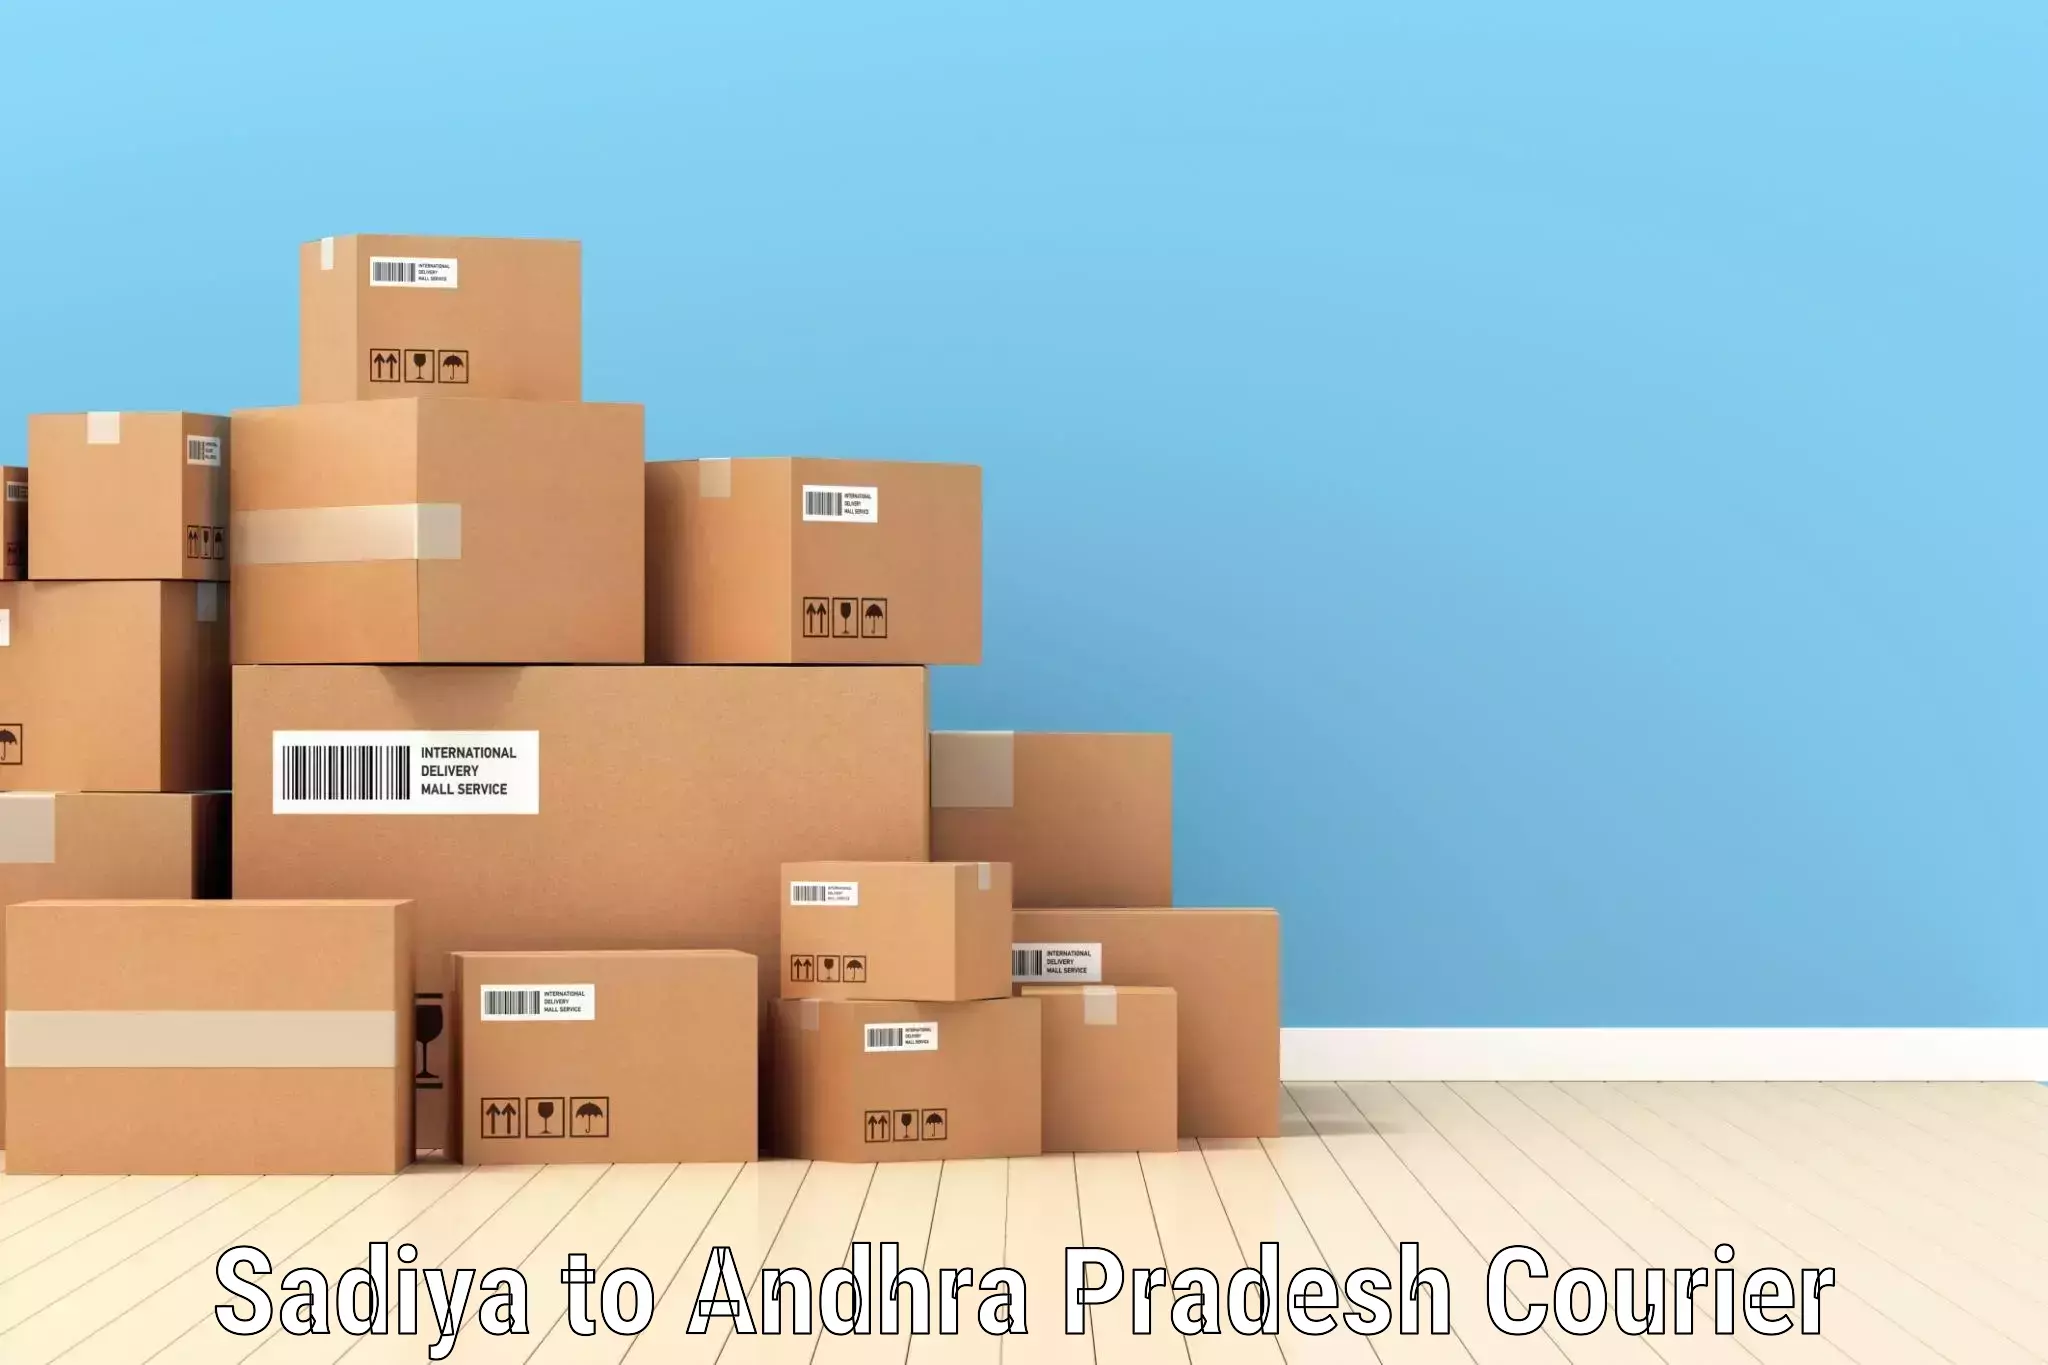 Special handling courier in Sadiya to Andhra Pradesh